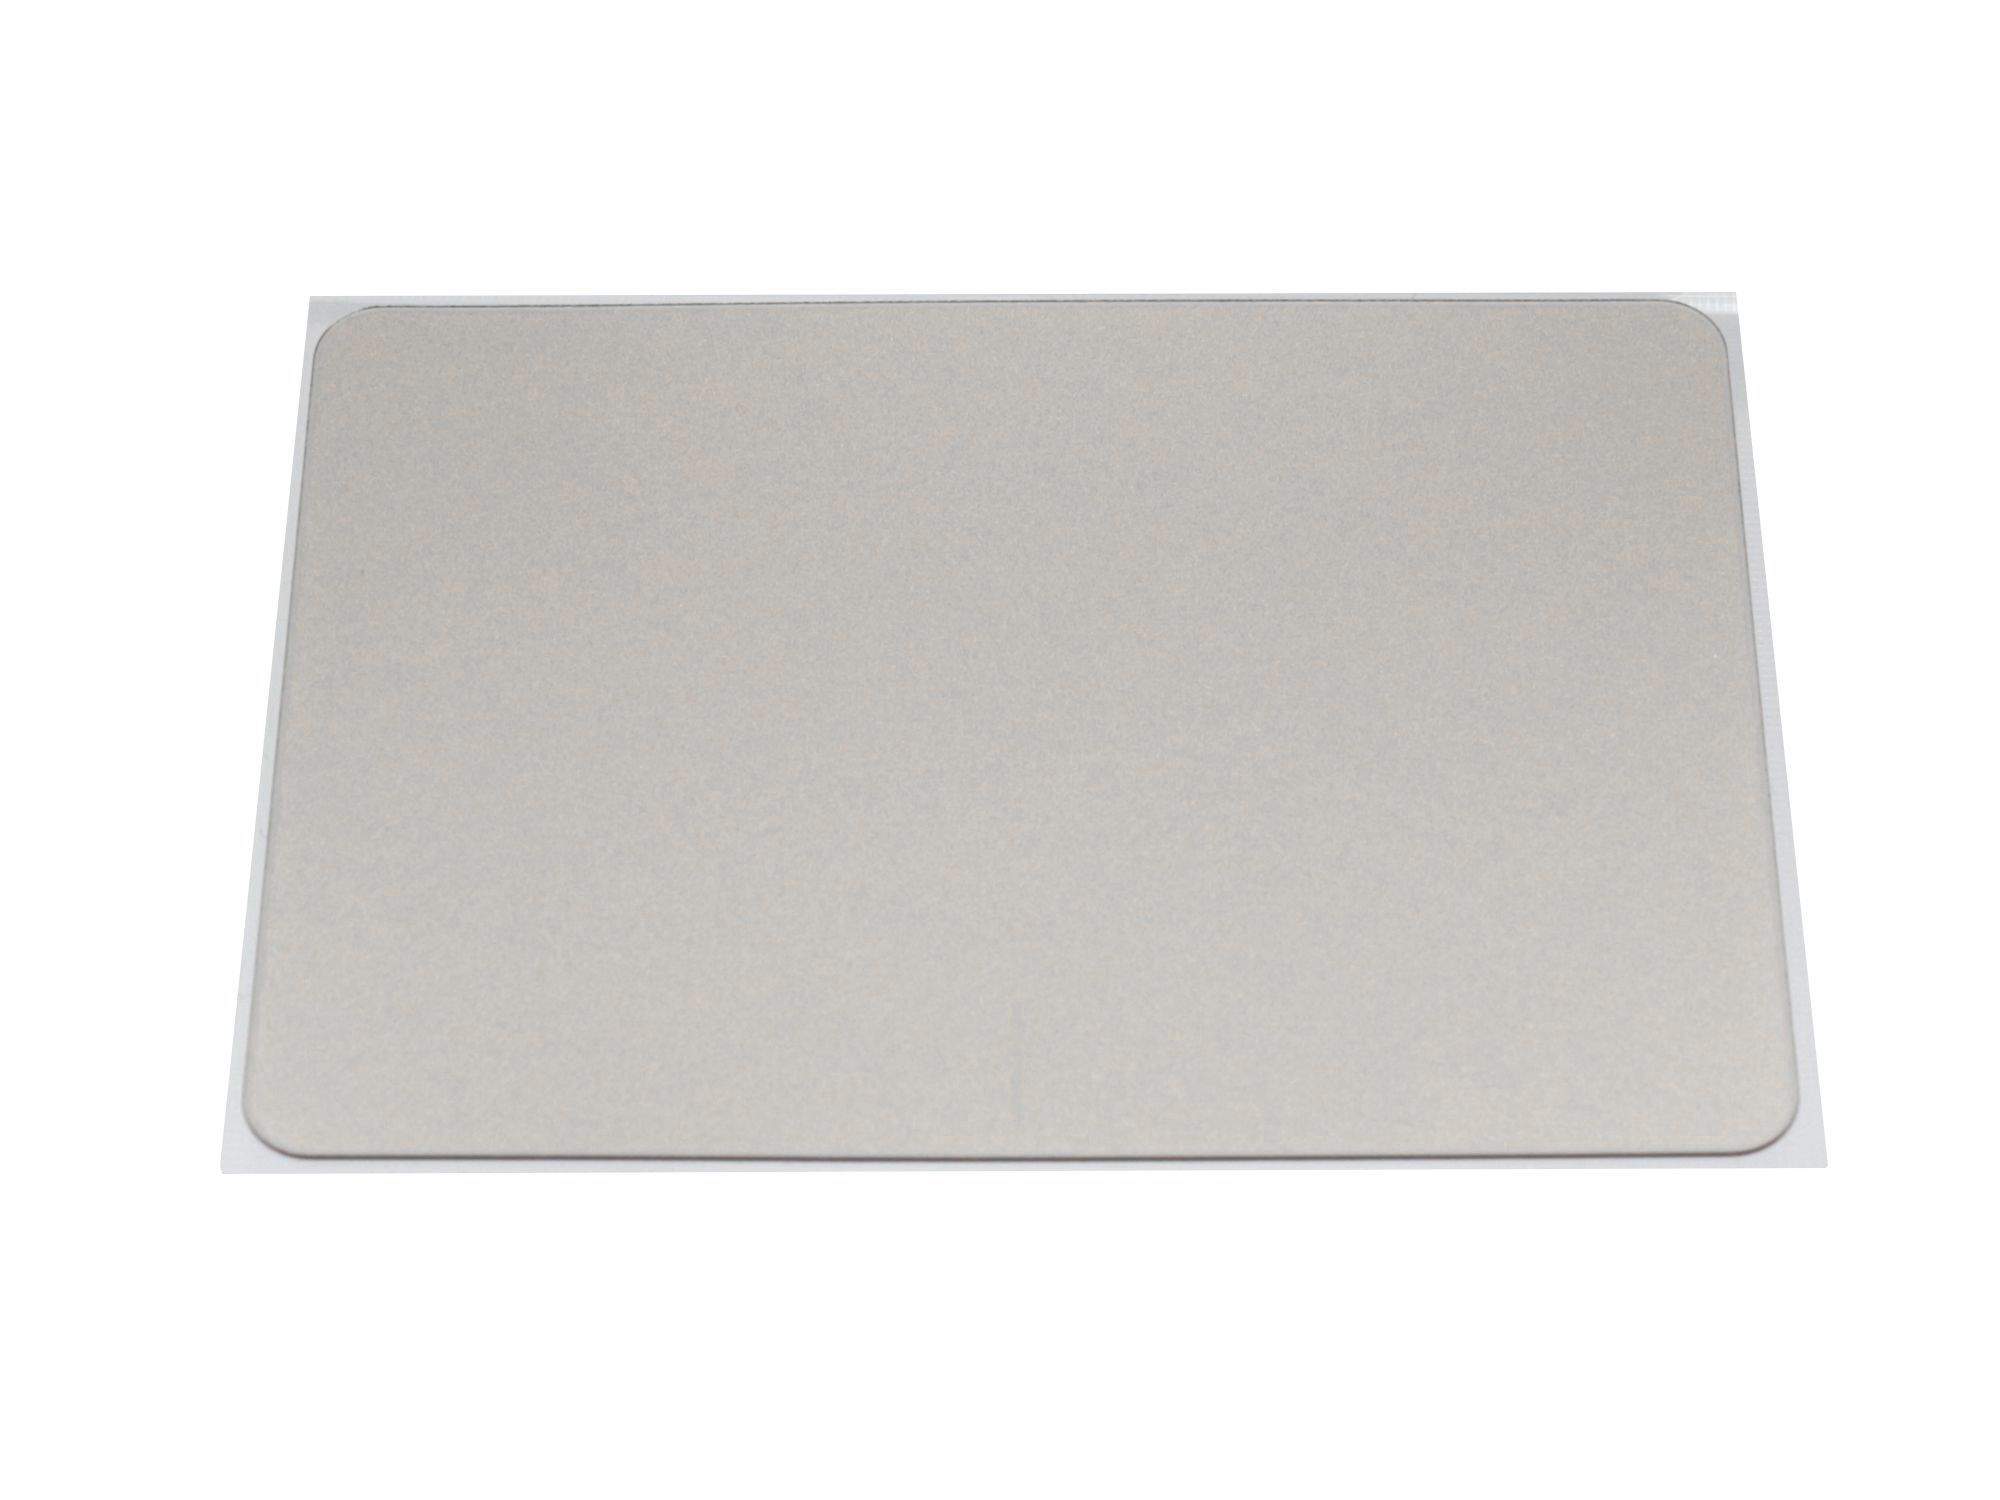 ASUS Touchpad Abdeckung silber Original für Asus F556UV Serie